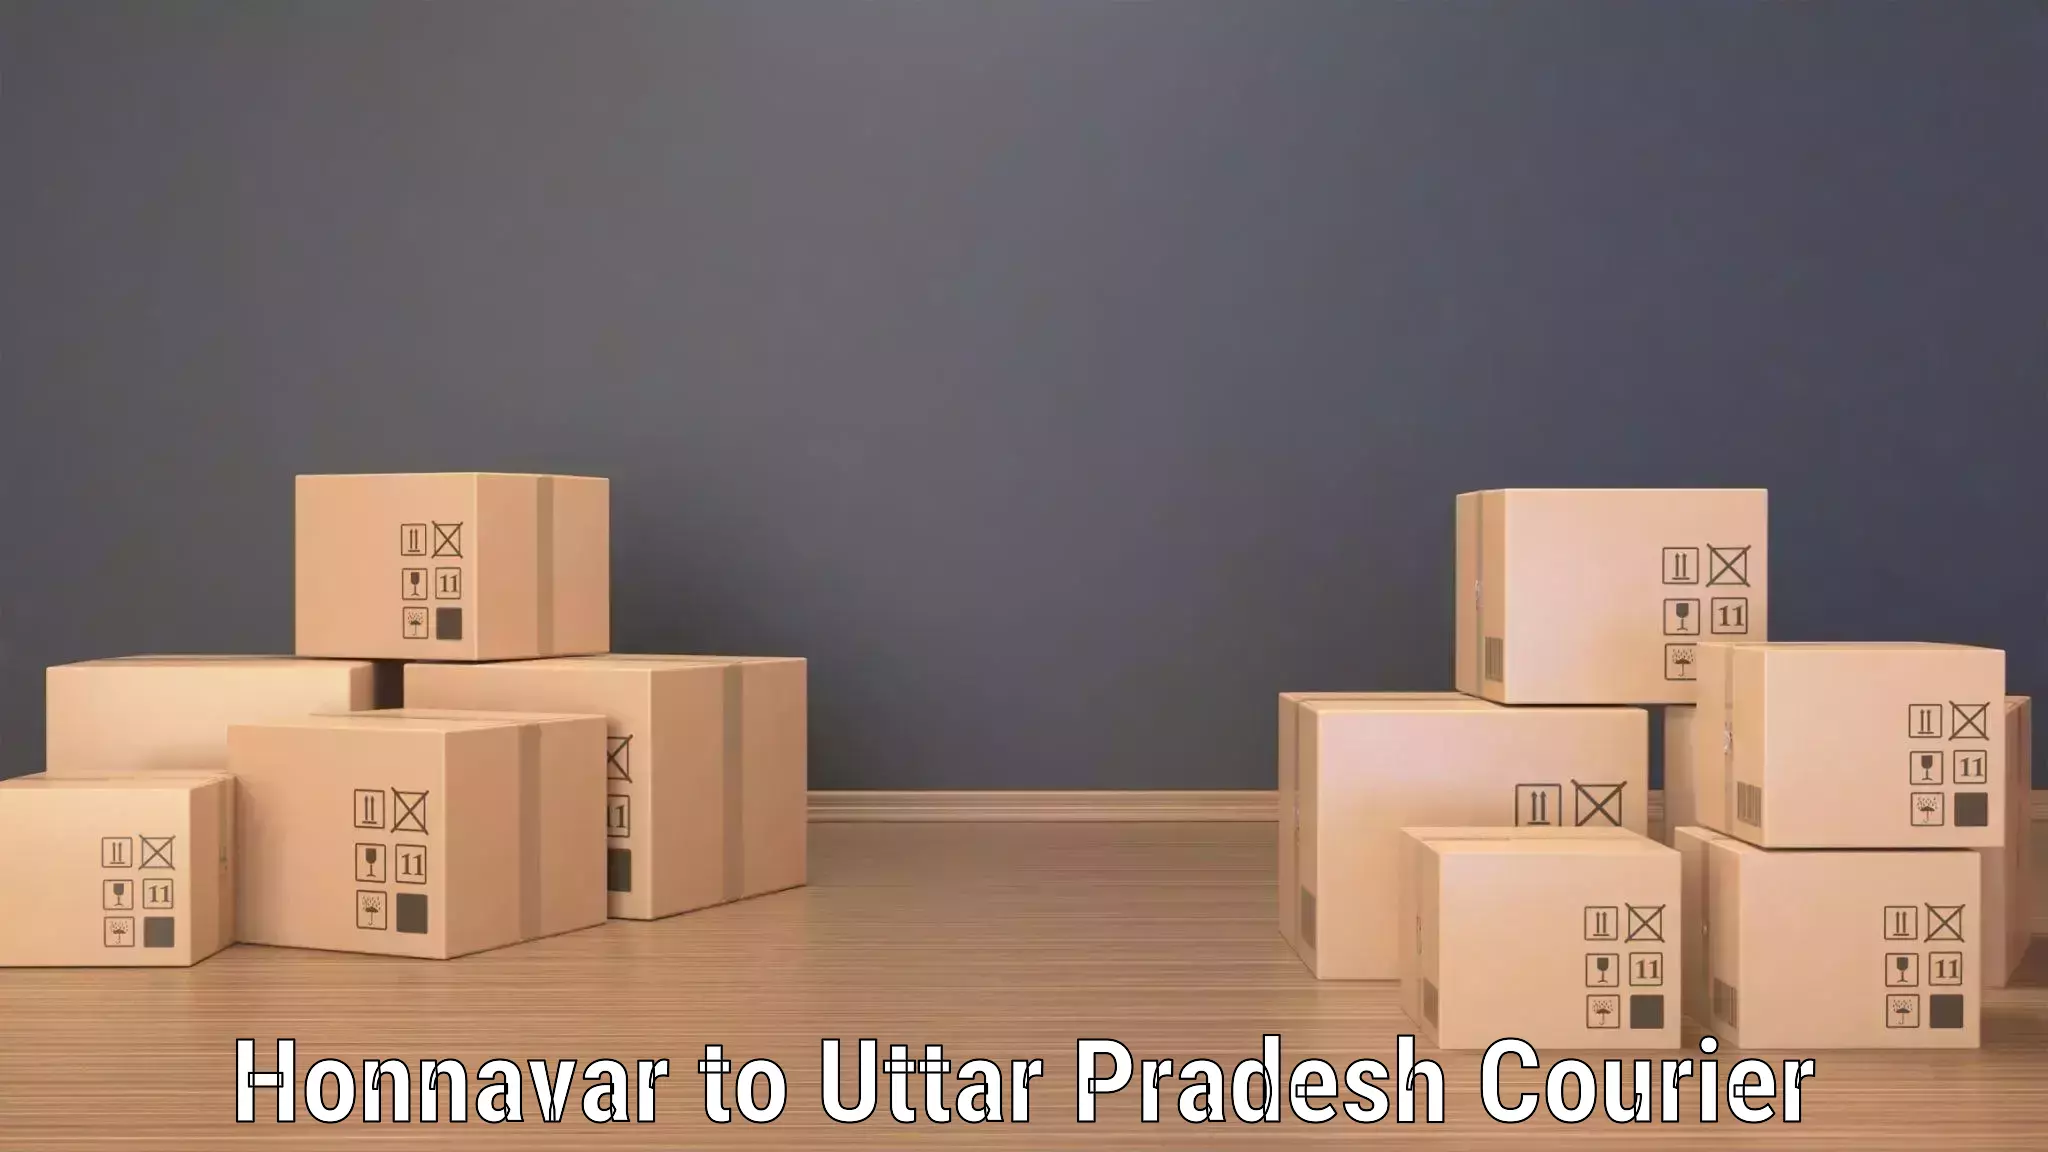 On-call courier service Honnavar to Dibai